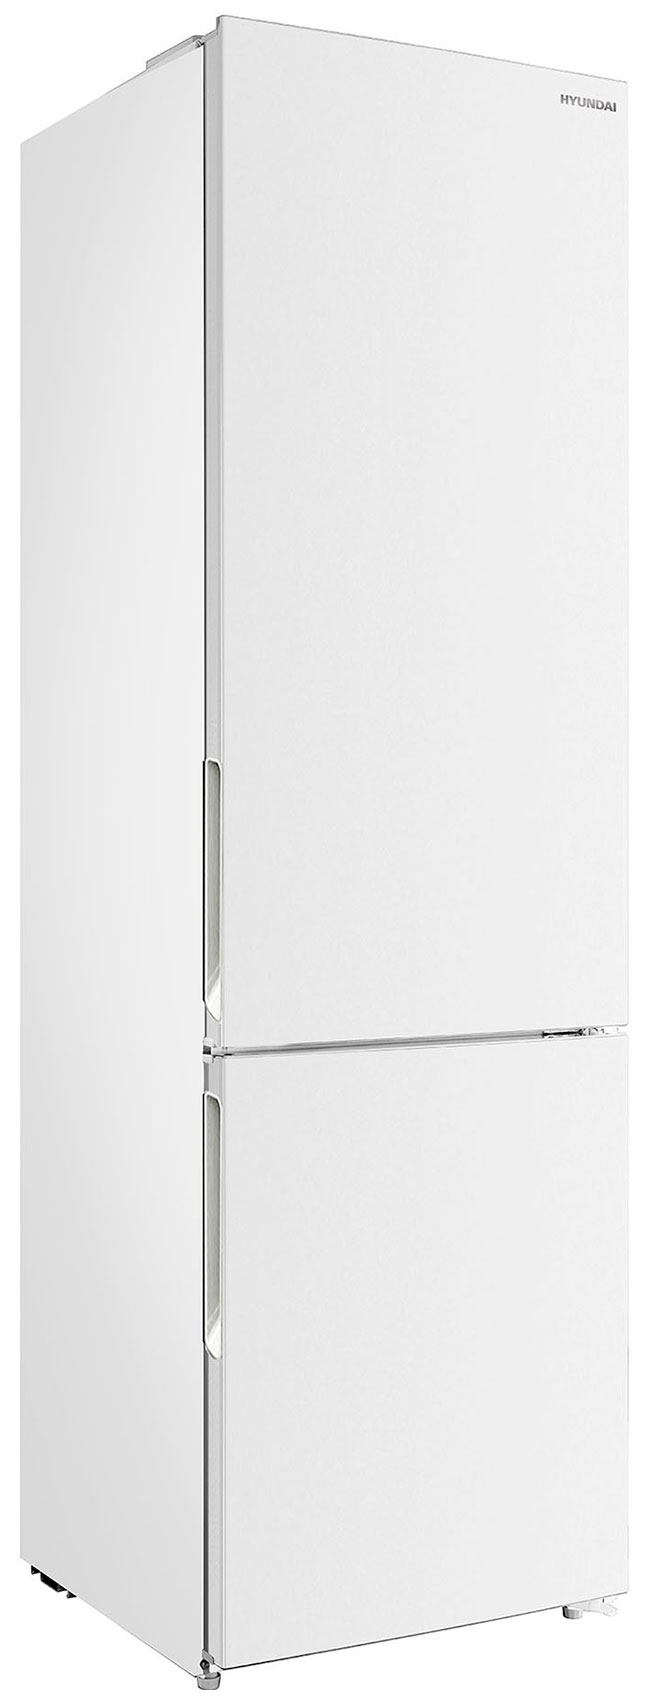 Двухкамерный холодильник Hyundai CC3593FWT белый двухкамерный холодильник hyundai cc3093fwt белый